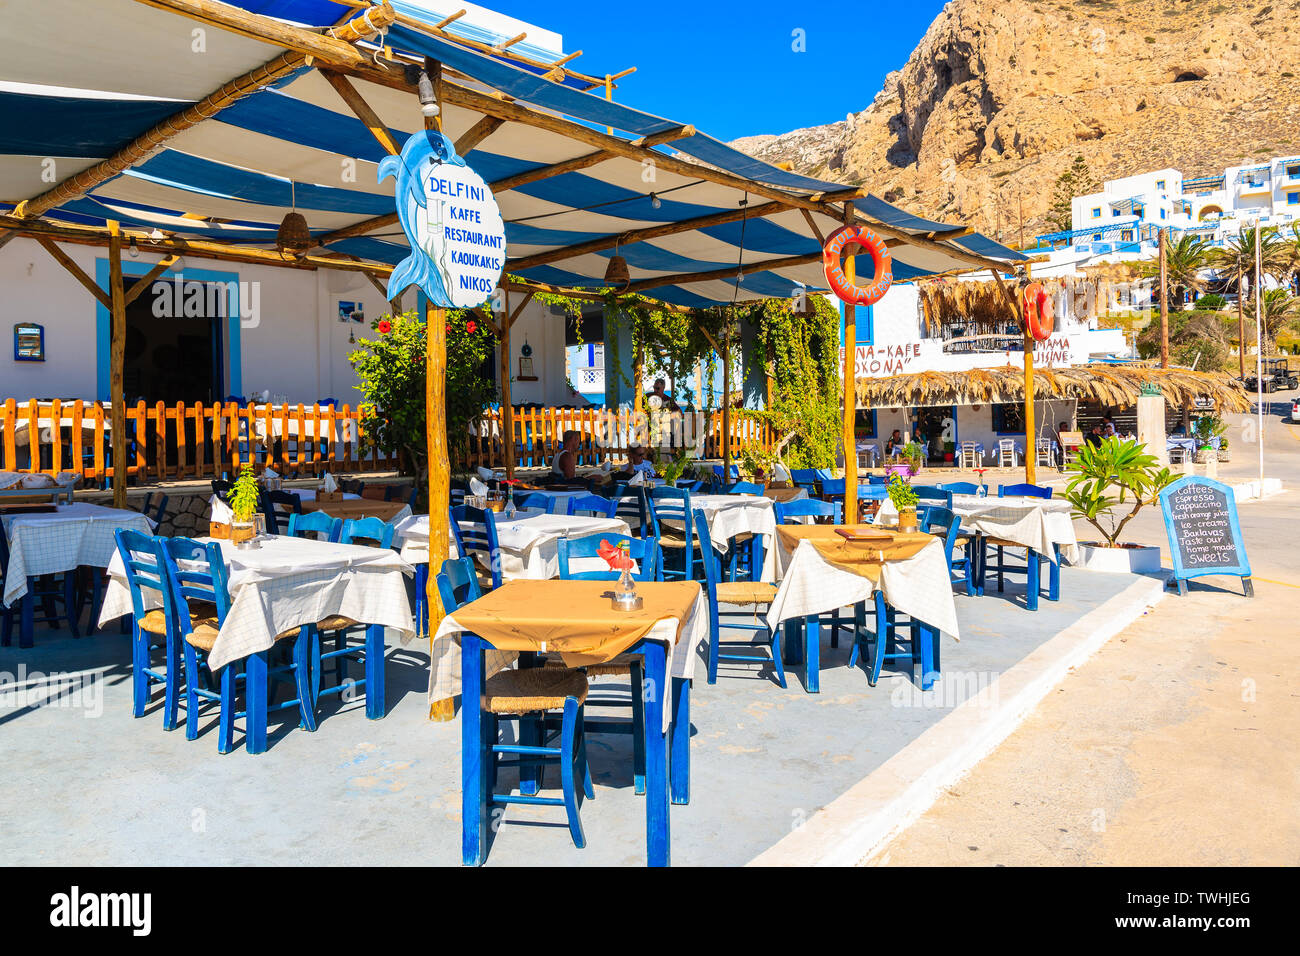 FINIKI PORTA, KARPATHOS ISLAND - Set 25, 2018: tipica taverna greca in Finiki porta sul isola di Karpathos. La Grecia è molto popolare meta di vacanza in E Foto Stock